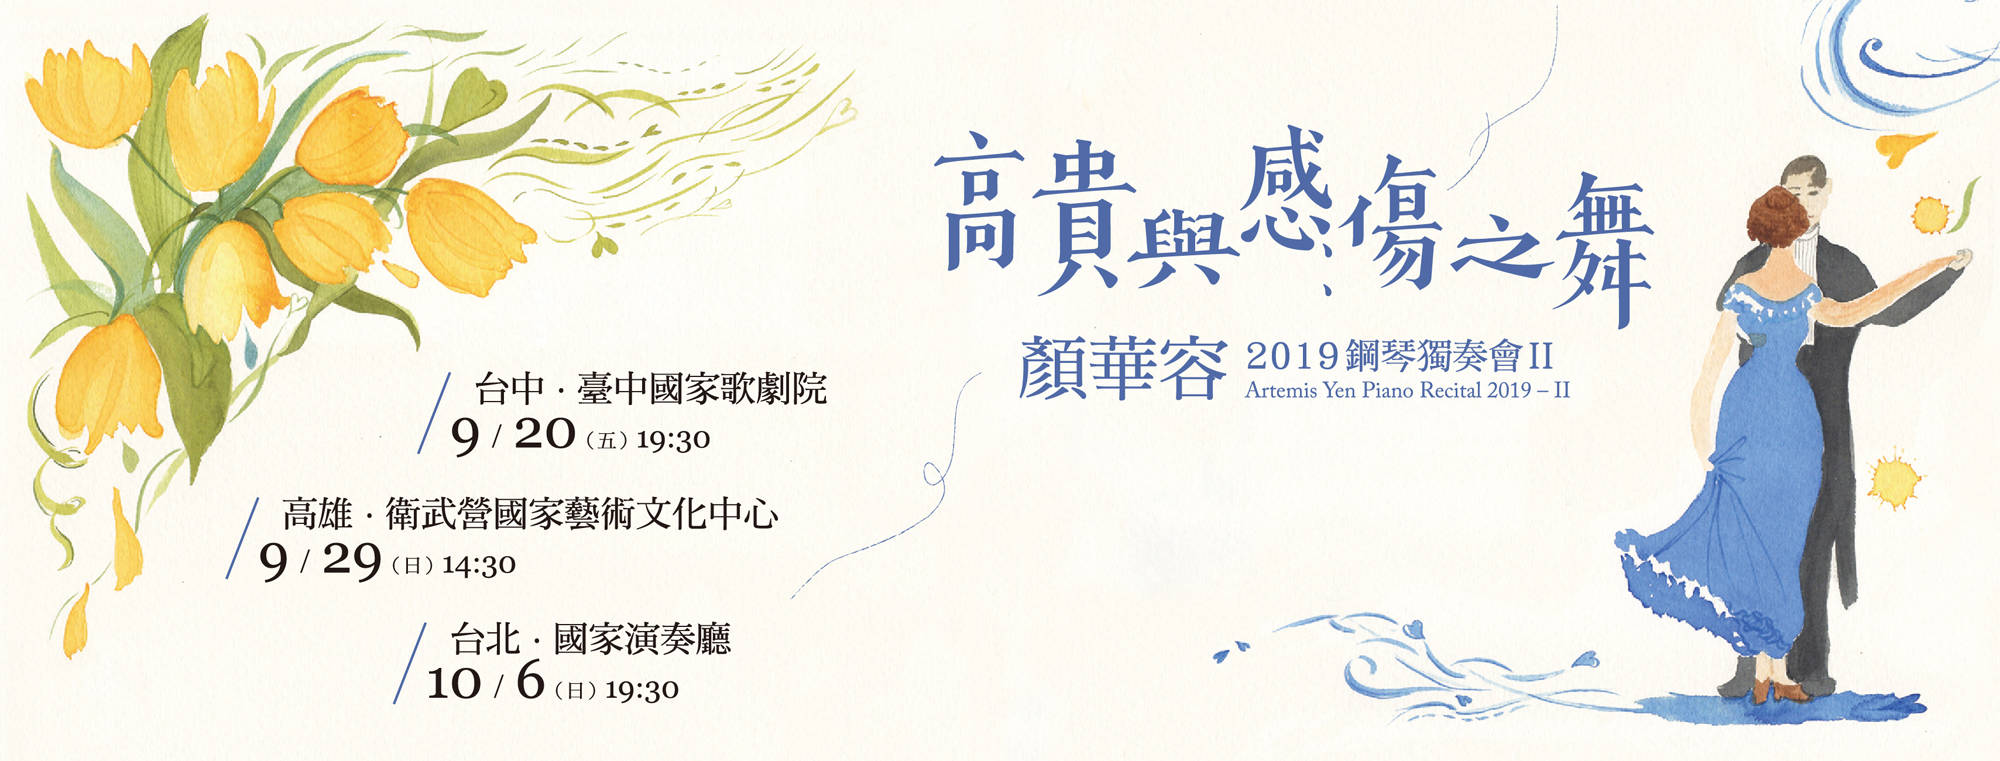 Artemis Yen Piano Recital 2019–II